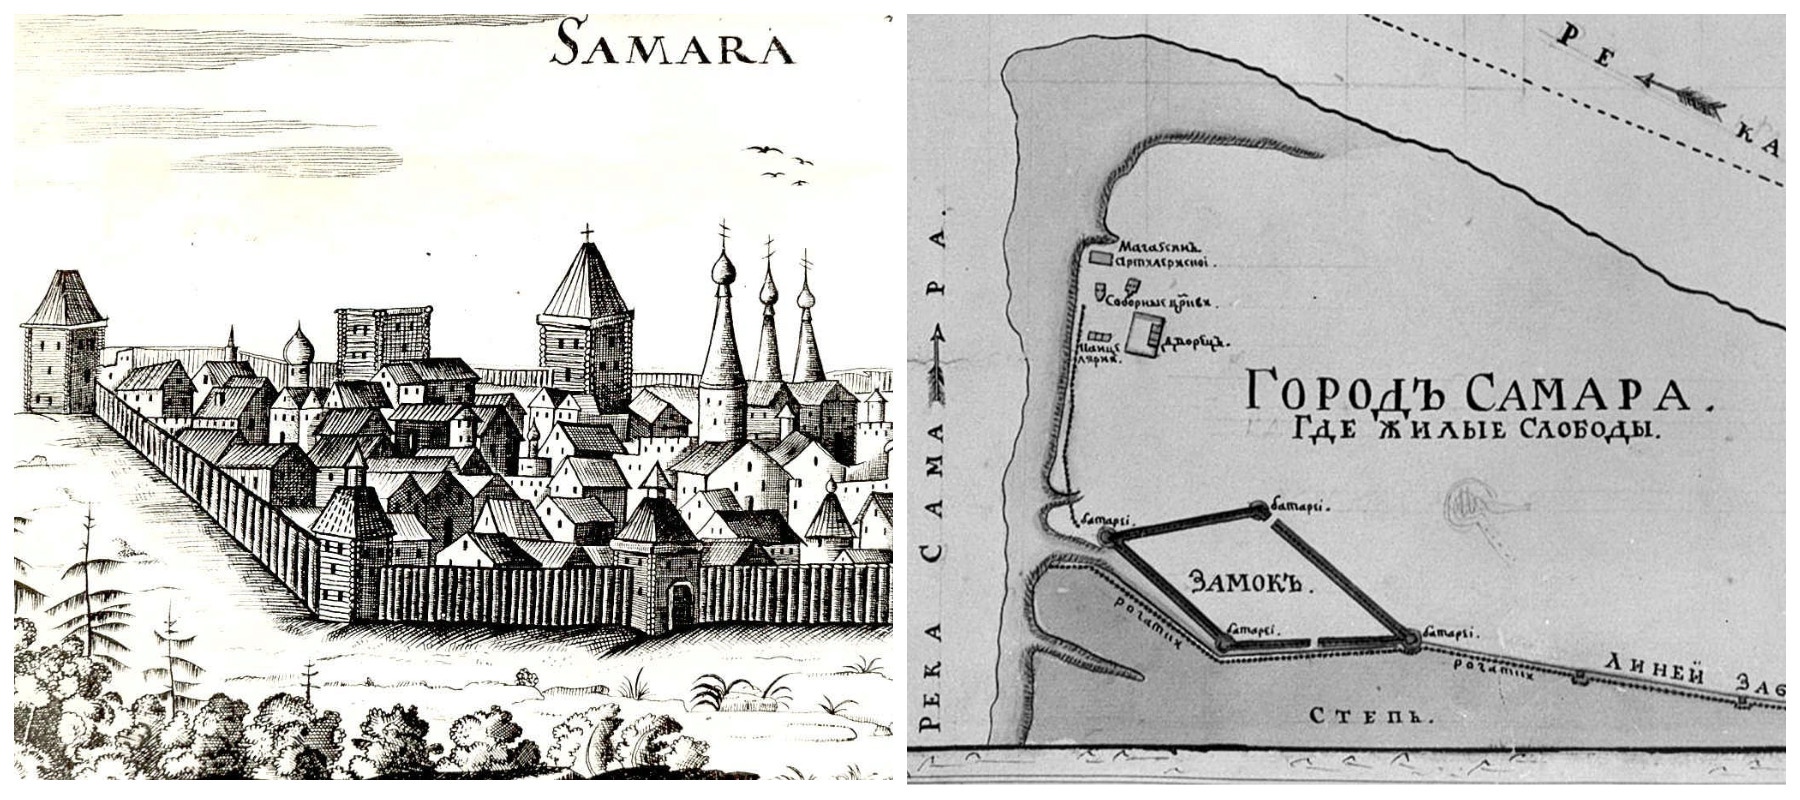 Как яицкие казаки помогли строительству крепости Самара и за что воевода Засекин казнил атамана Мещеряка. Часть 2